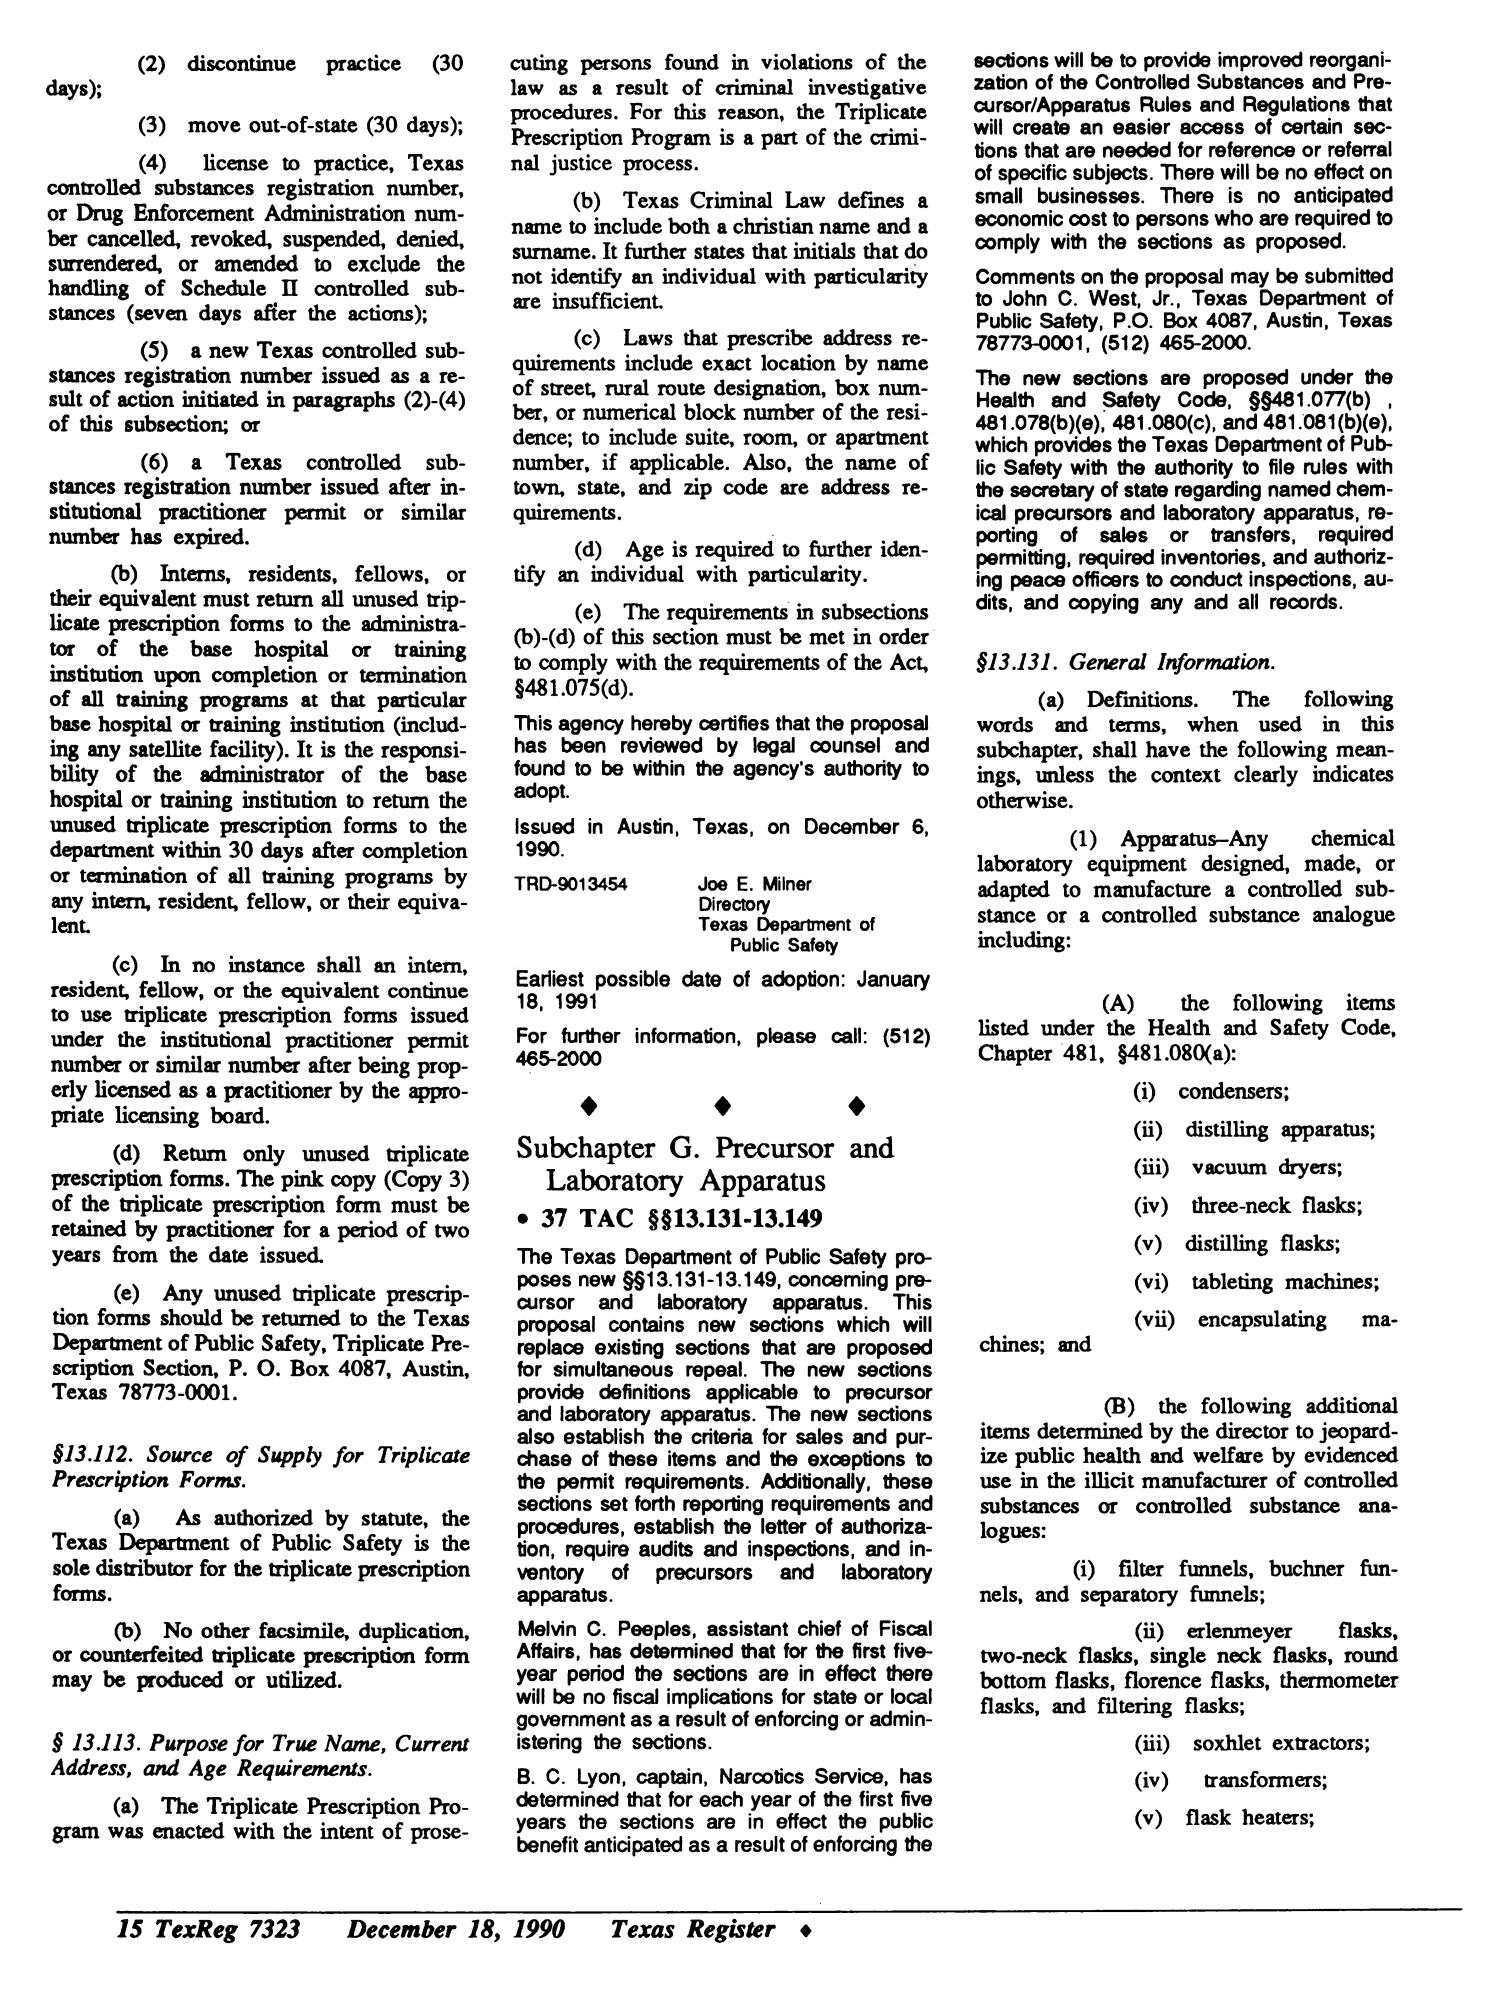 Texas Register, Volume 15, Number 94, (Volume I), Pages [7233-7360], December 18, 1990
                                                
                                                    7323
                                                